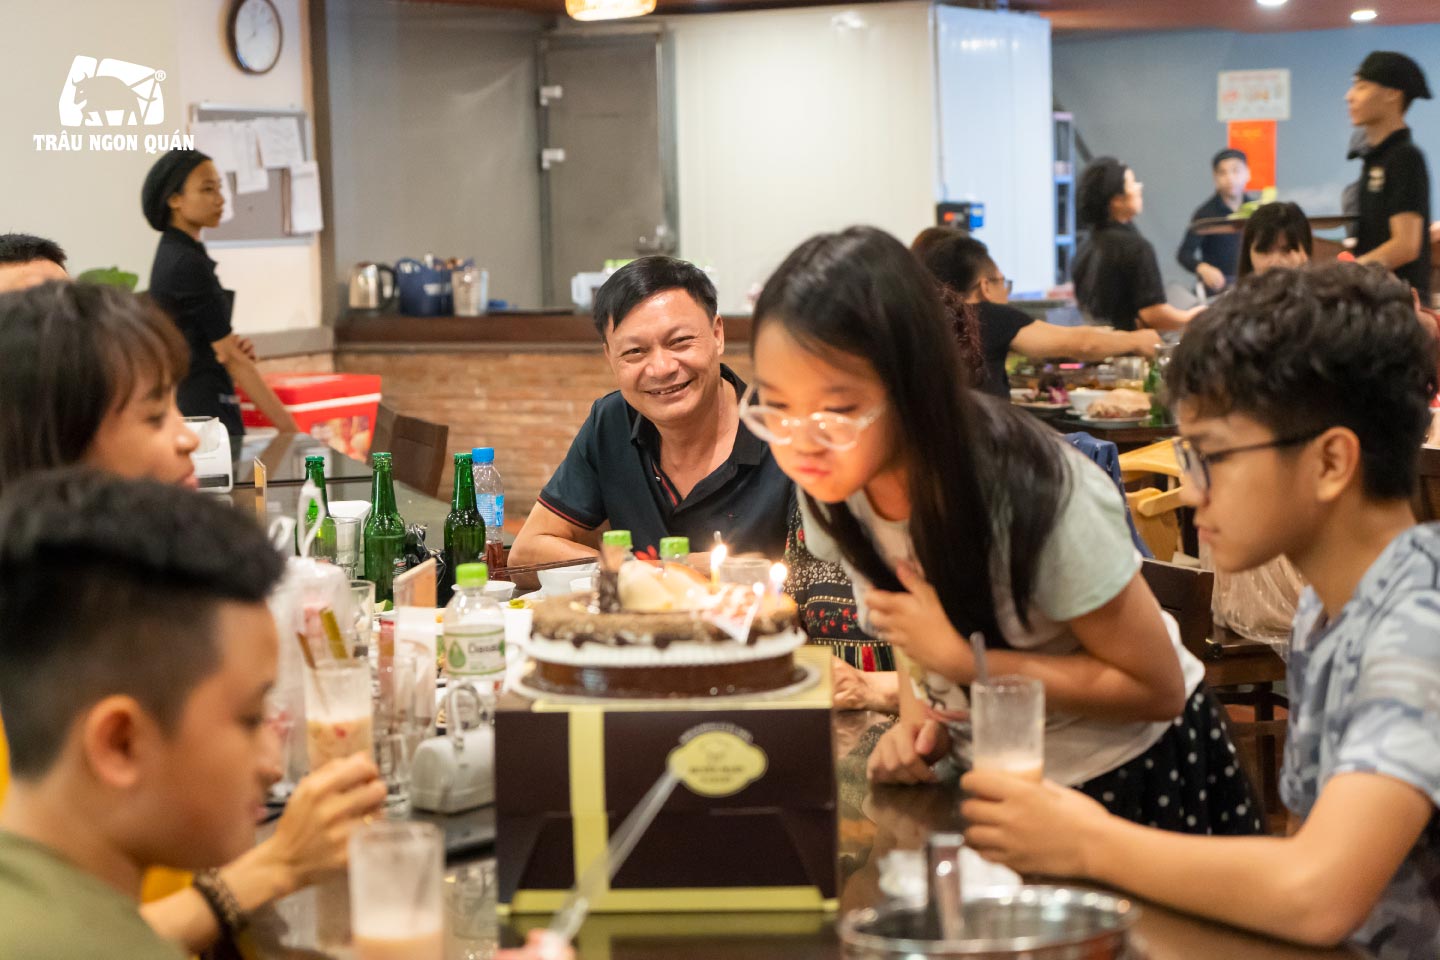 Trâu Ngon Quán điểm đến lý tưởng cho bữa tiệc sinh nhật của Quý khách hàng